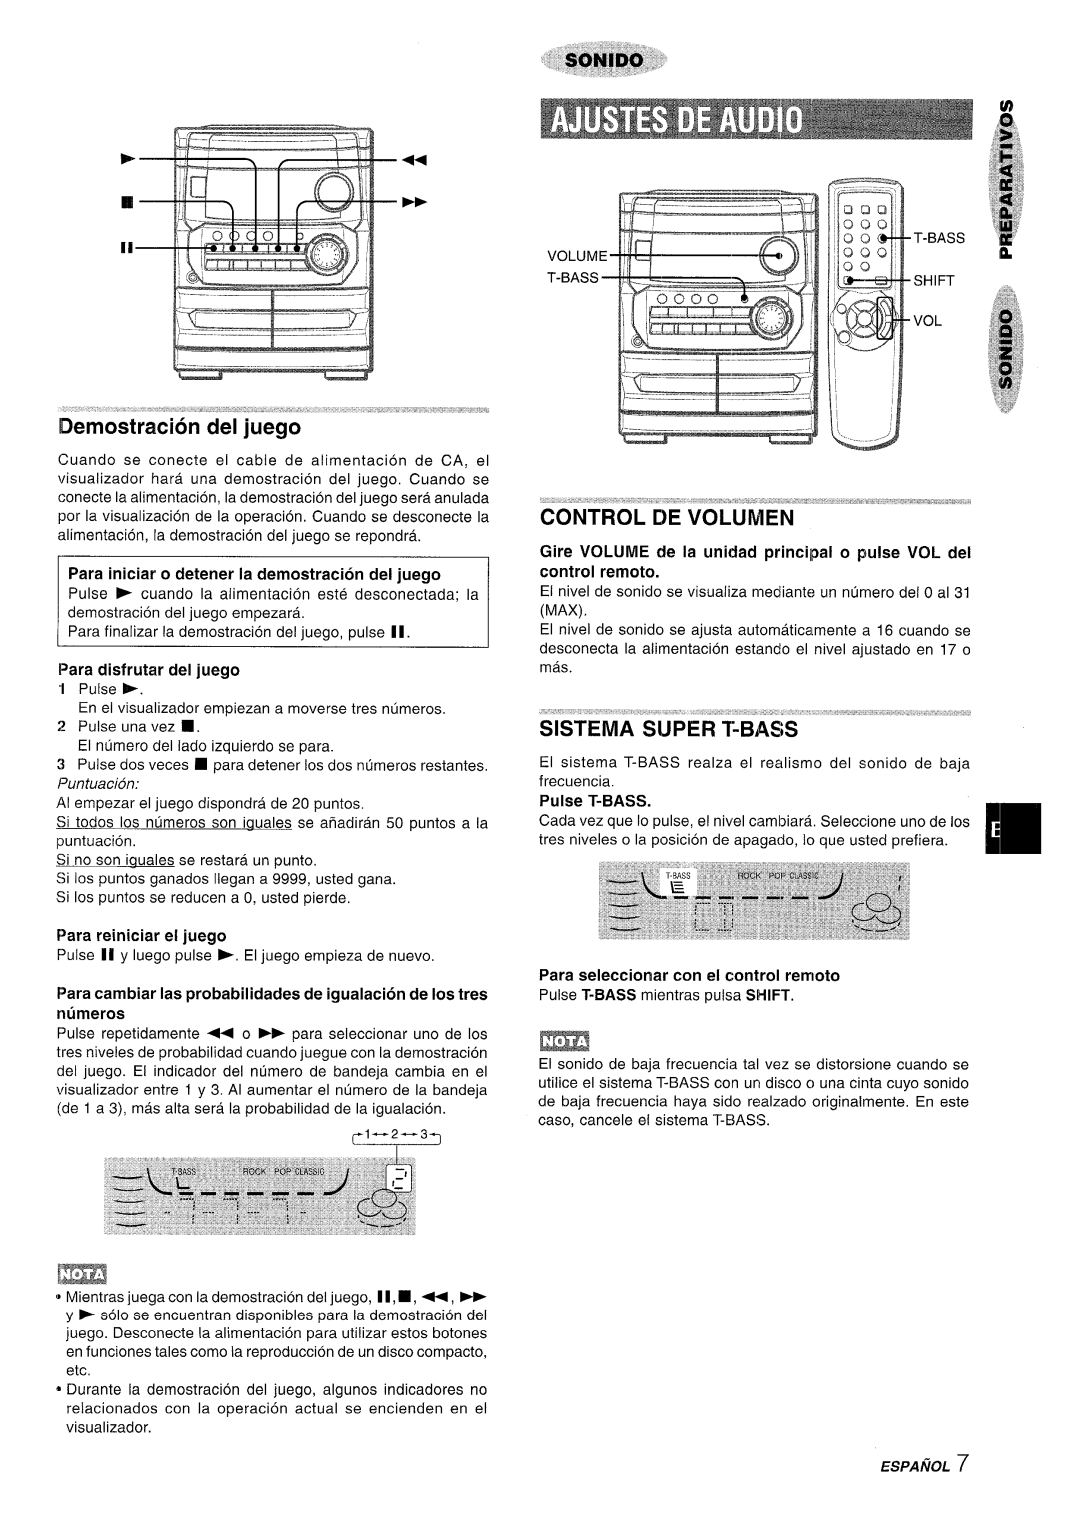 Aiwa CX-NA222 manual Para iniciar o detener la demostracion del juego, Para disfrutar del juego, Para reiniciar el juego 